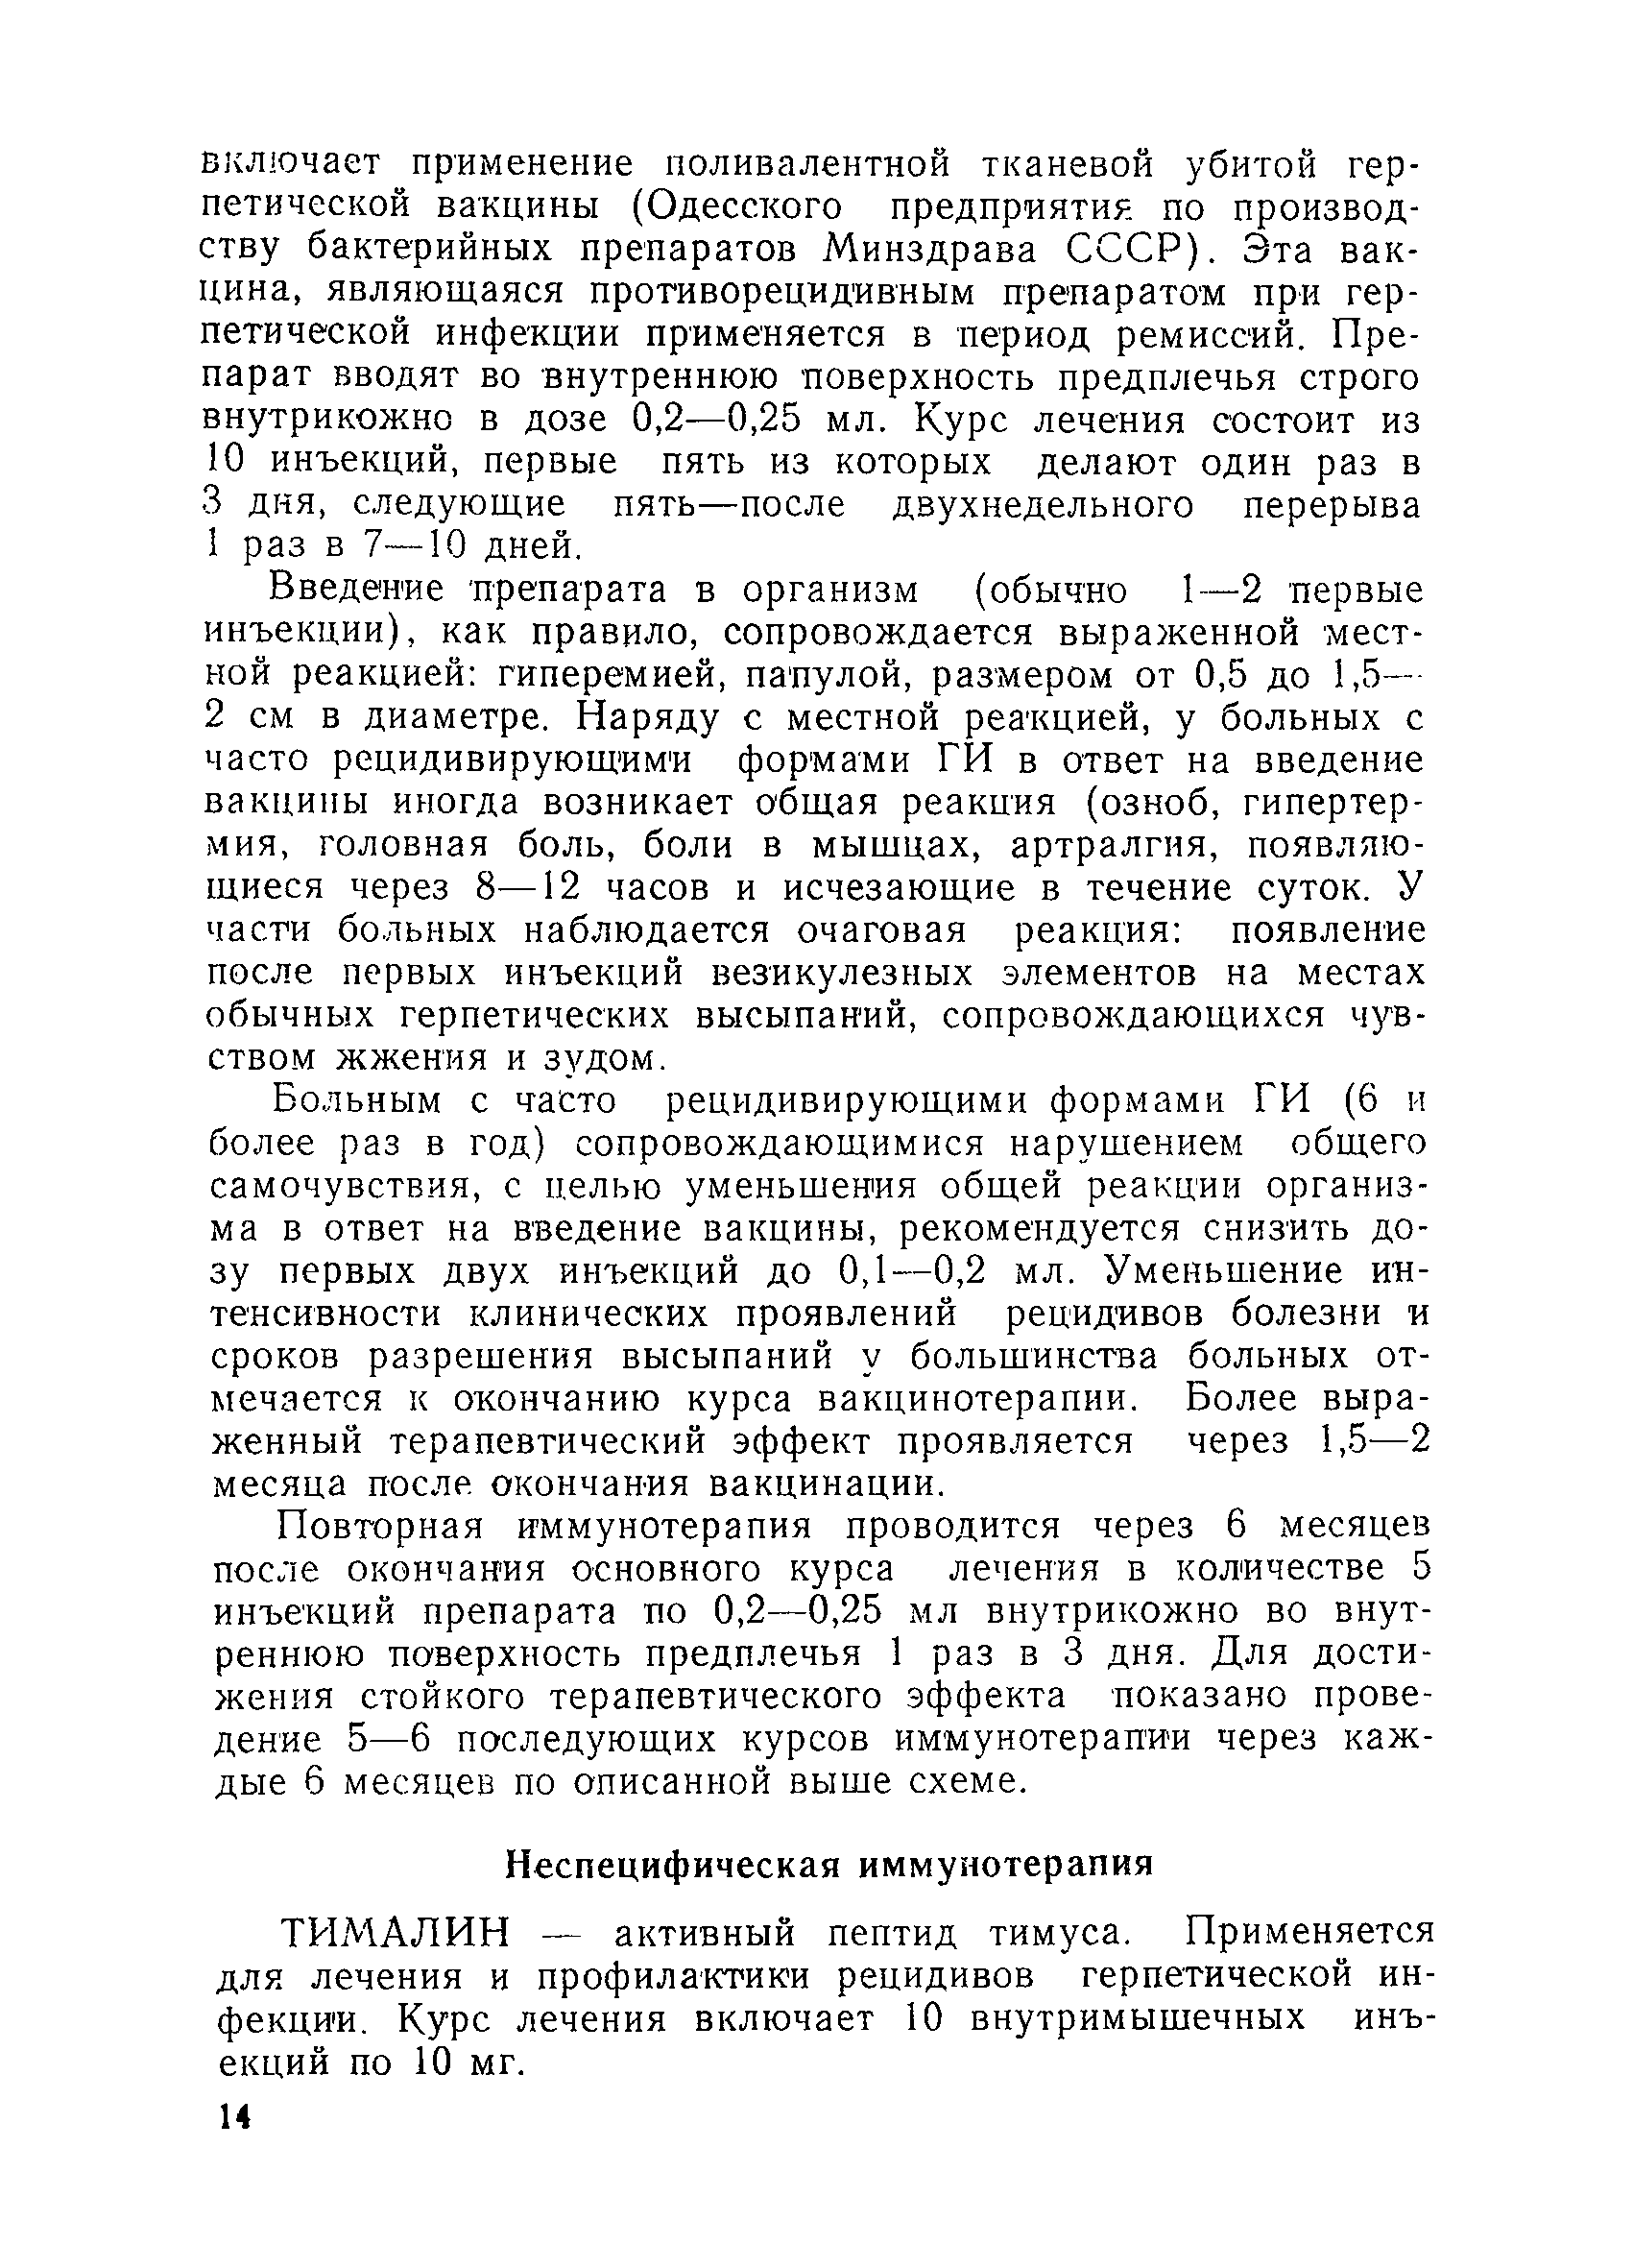 Методические рекомендации 10-11/46